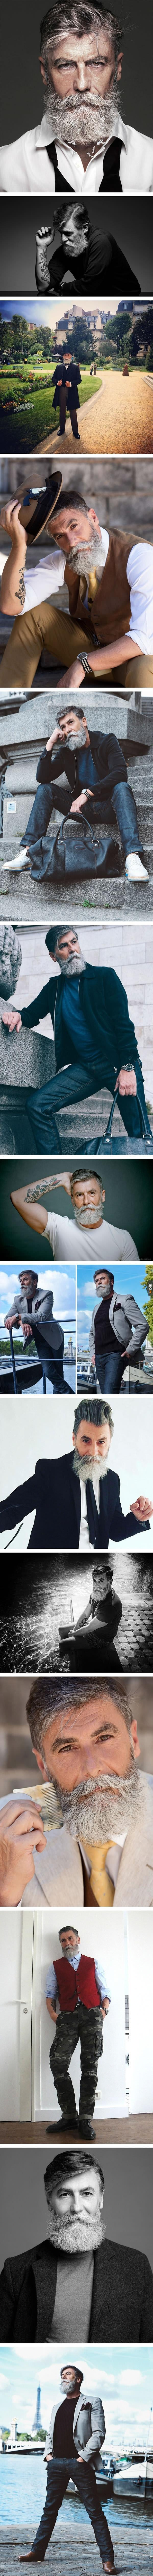 60 letni mężczyzna został modelem, gdy zapuścił brodę